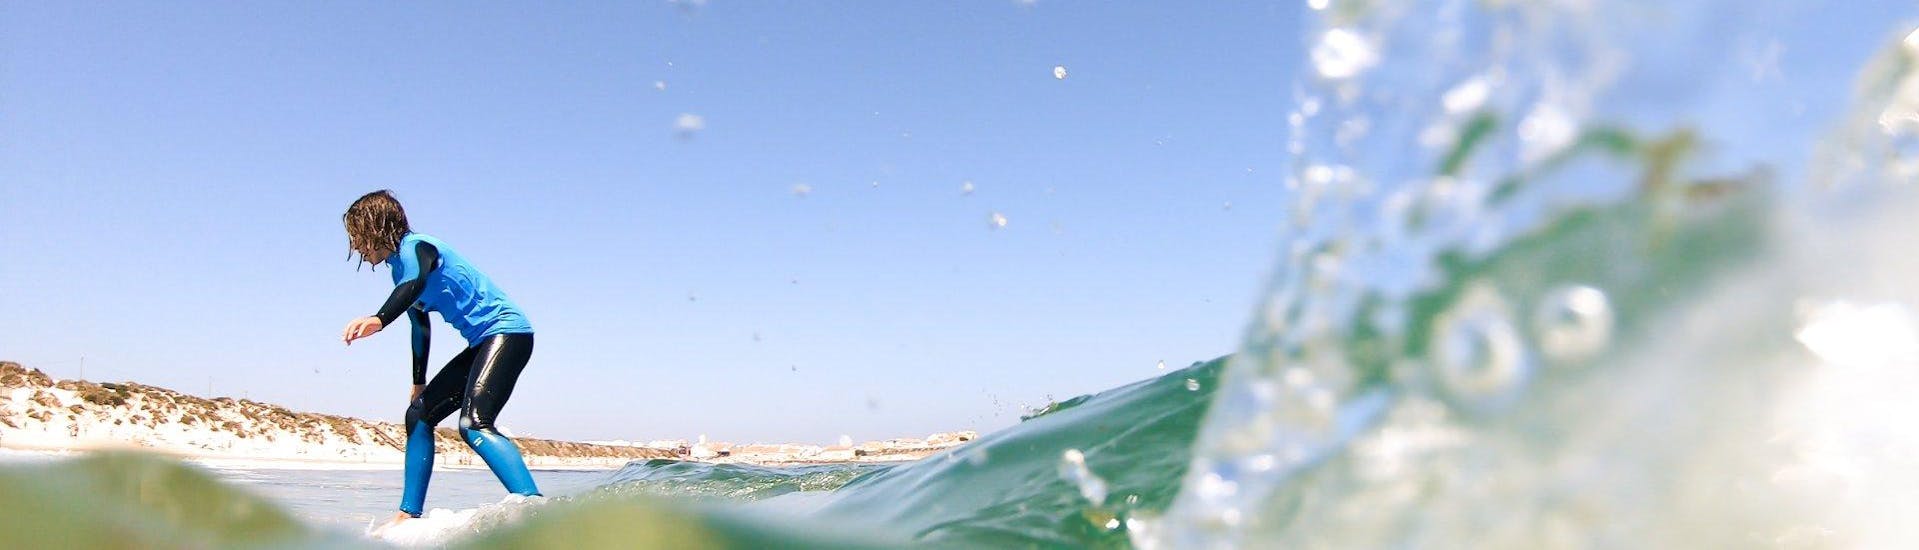 Beim Aufbau-Surfkurs an der Praia da Gamboa in Peniche mit Go4Surf Peniche erwischt ein junger Surfer eine gute Welle.